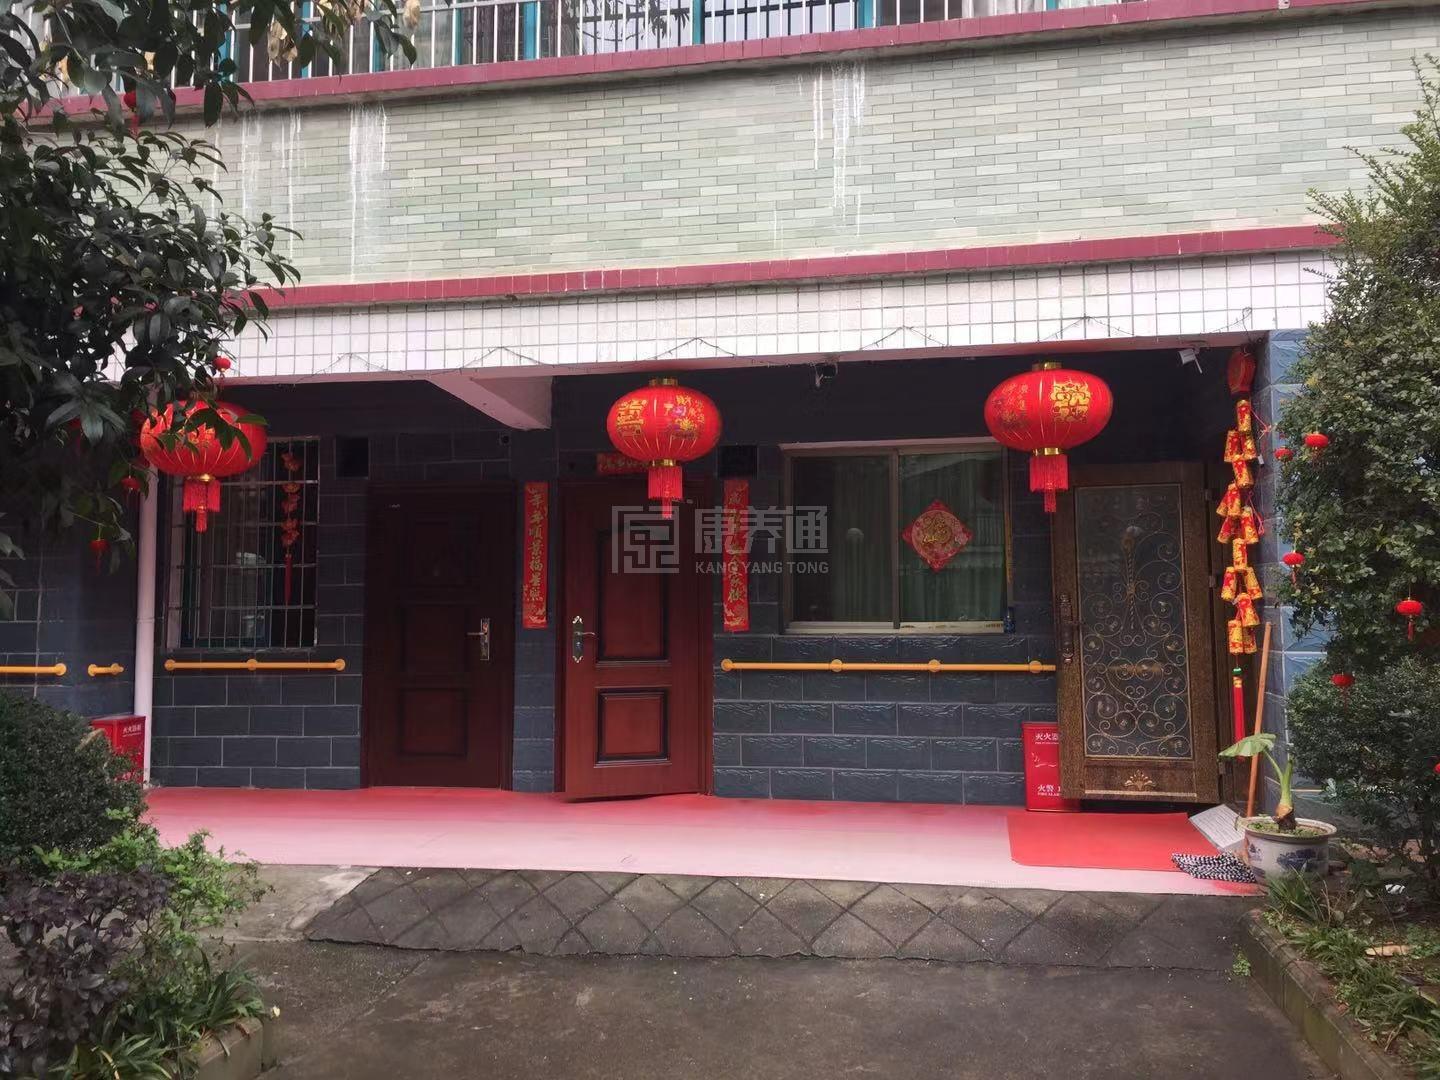 衡阳市珠晖区大众居家养老馆环境图-阳台